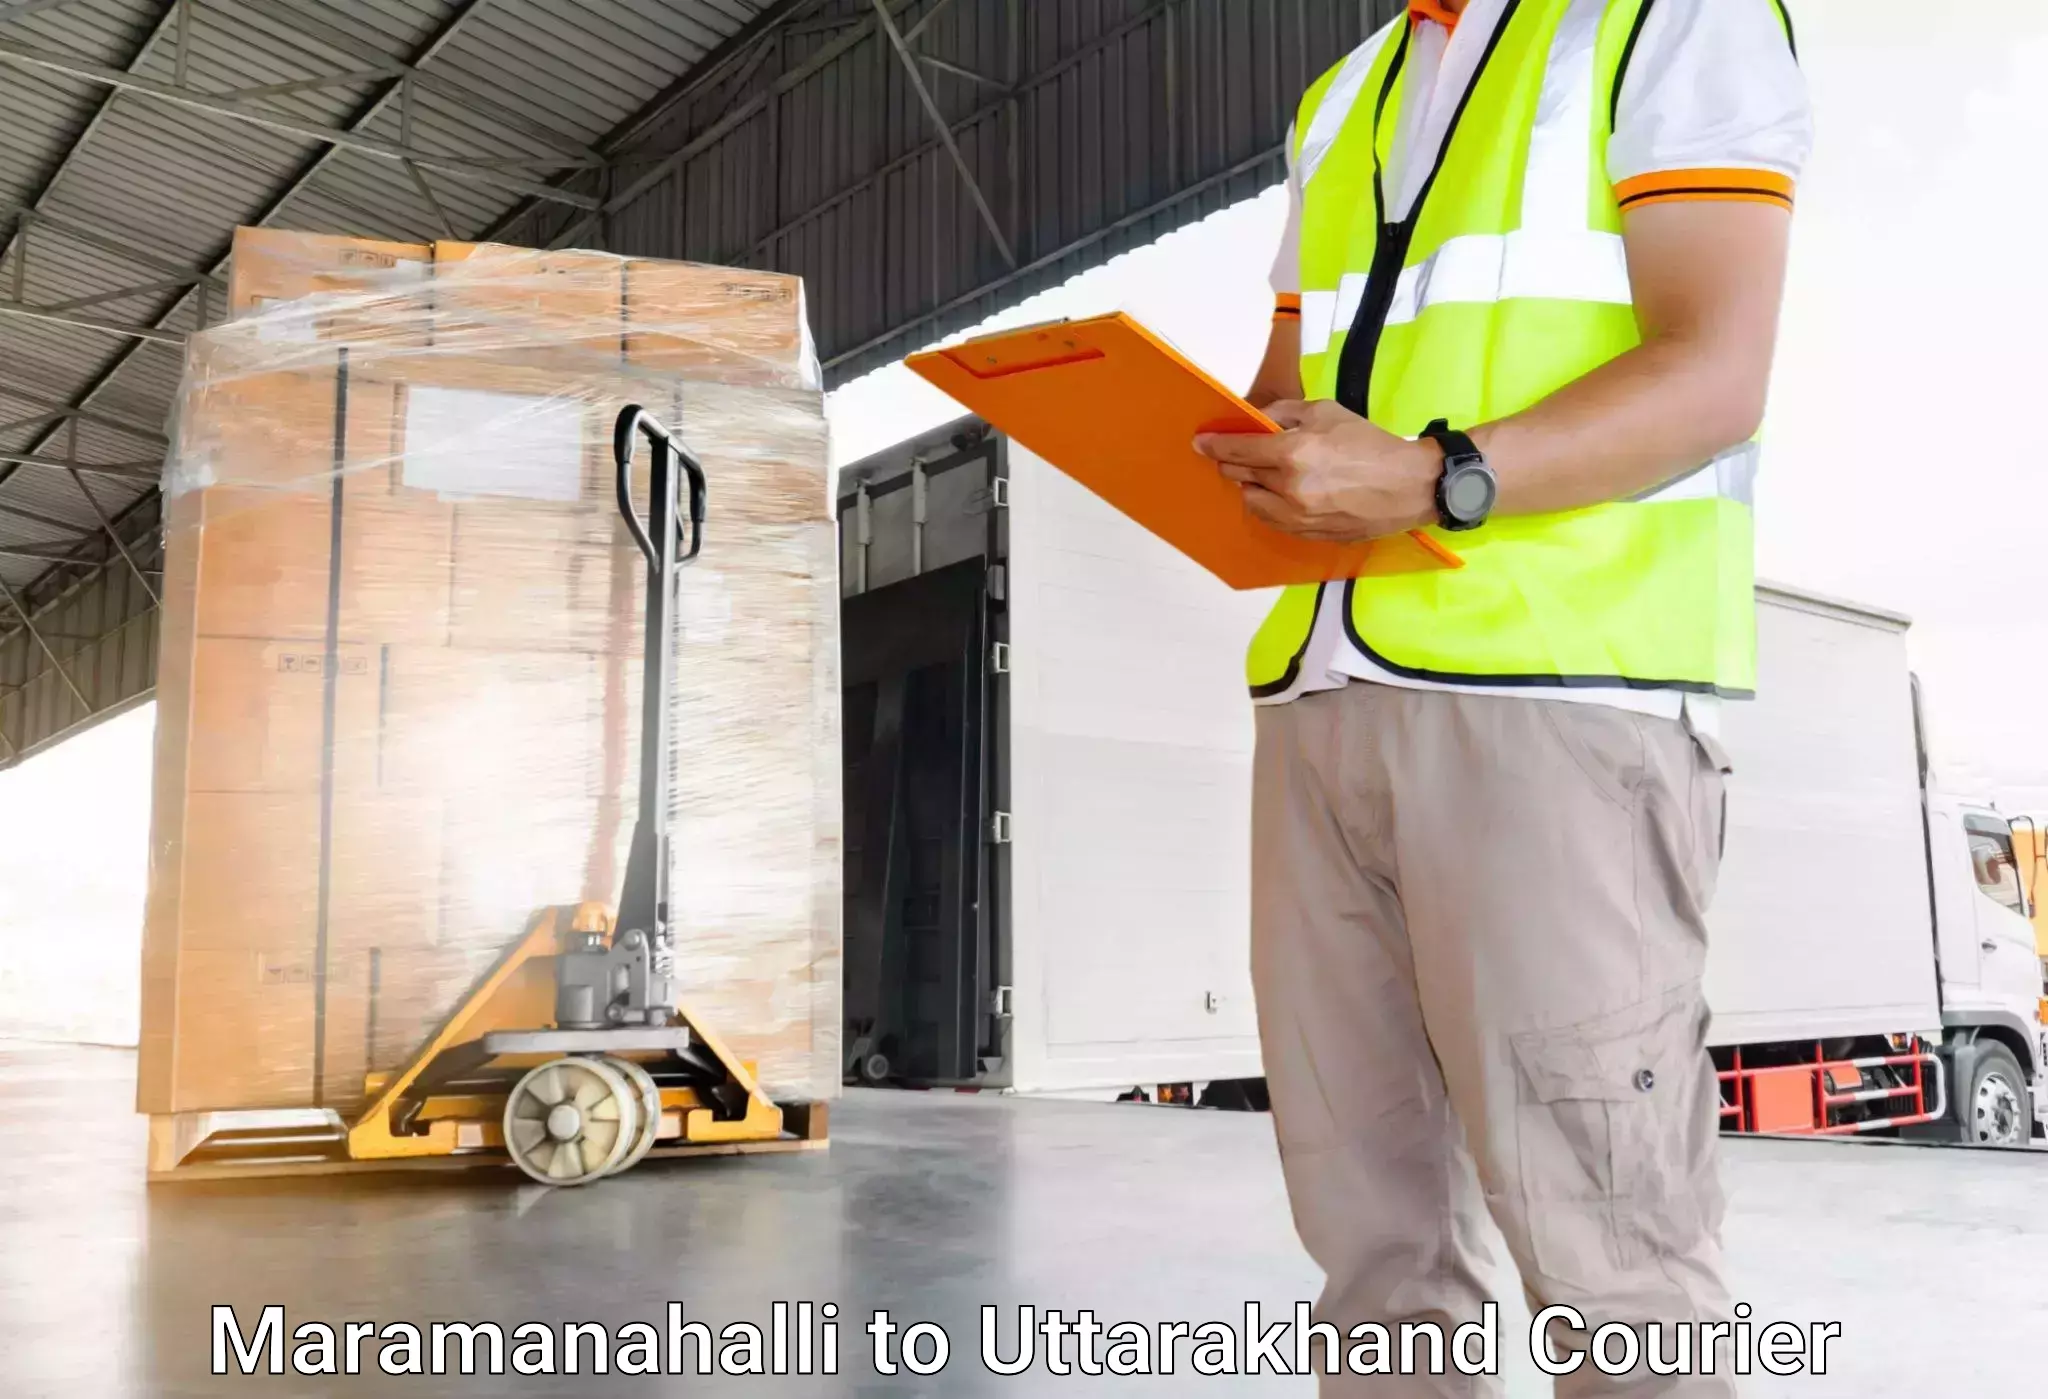 Luggage transport company Maramanahalli to Haldwani